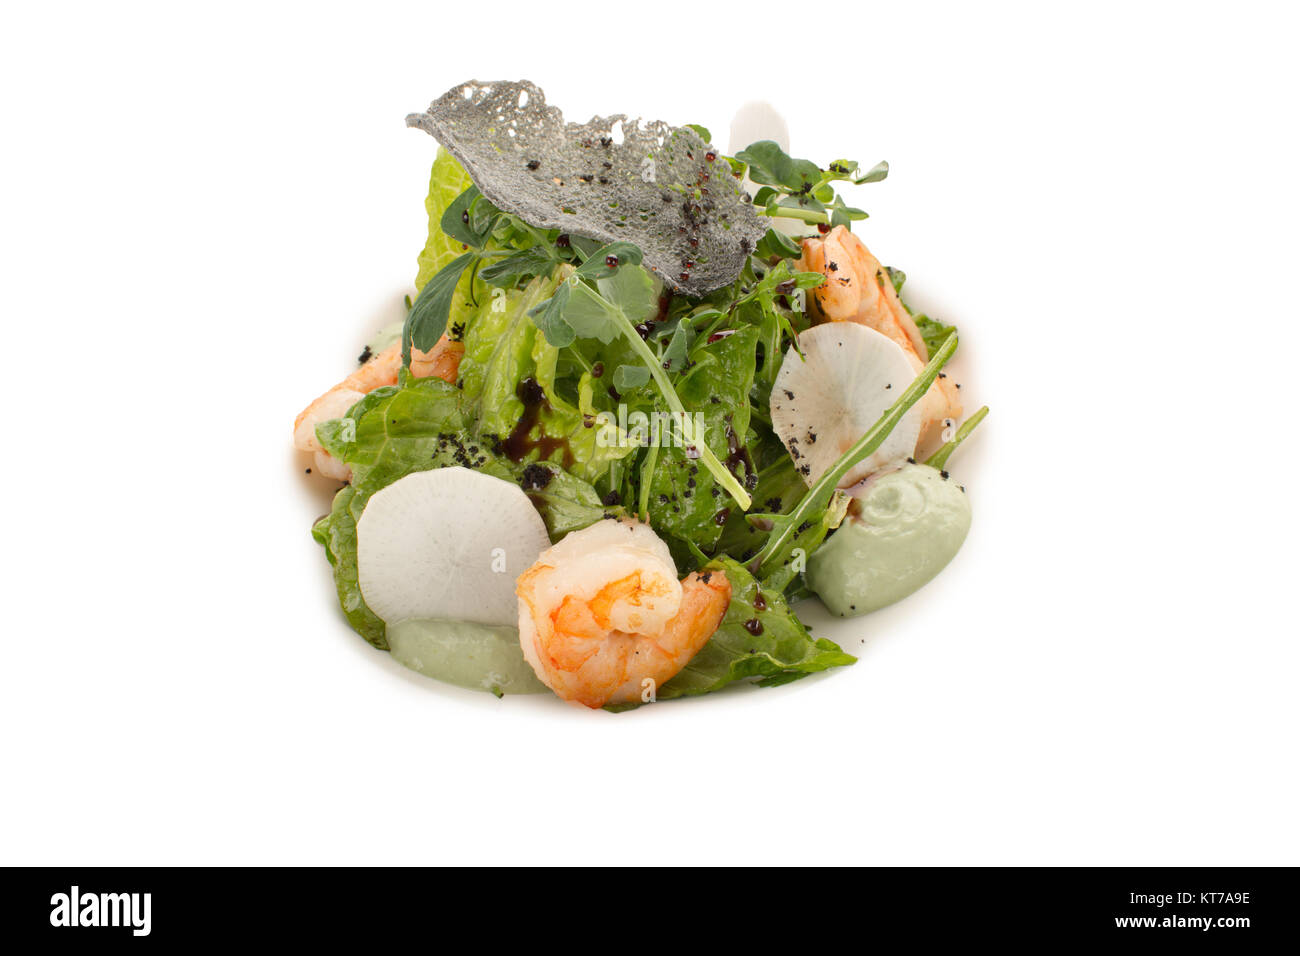 Un bel servire di insalata di mare, il verde delle foglie e la salsa, close-up, isolato su un background Foto Stock